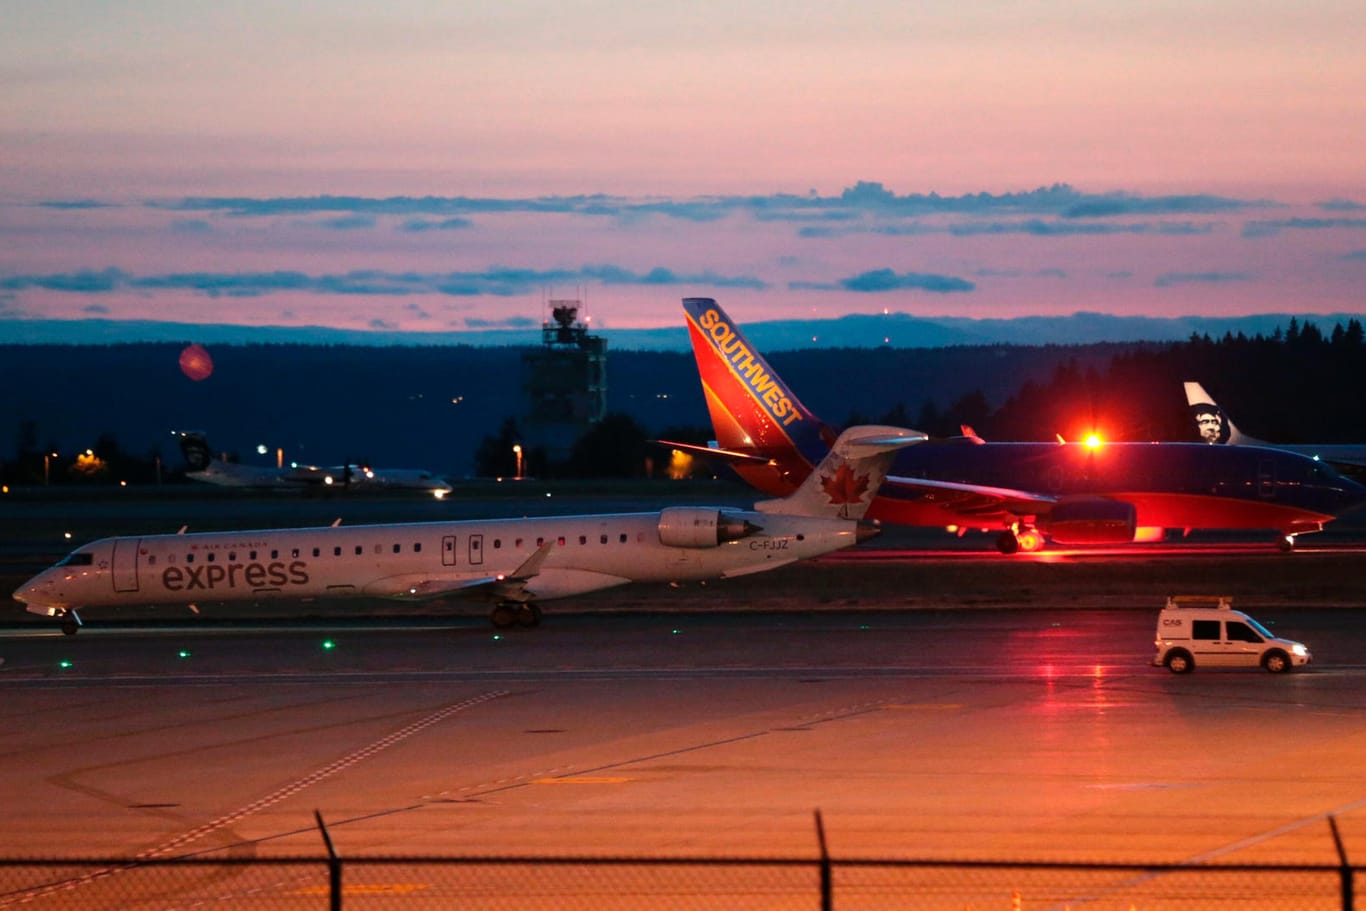 Flugzeuge am Sea-Tac International Airport in Seattle: Nach Angaben von Alaska Airlines handelte es sich bei der gekaperten Maschine um eine zweimotorige Turboprop vom Typ Q400.